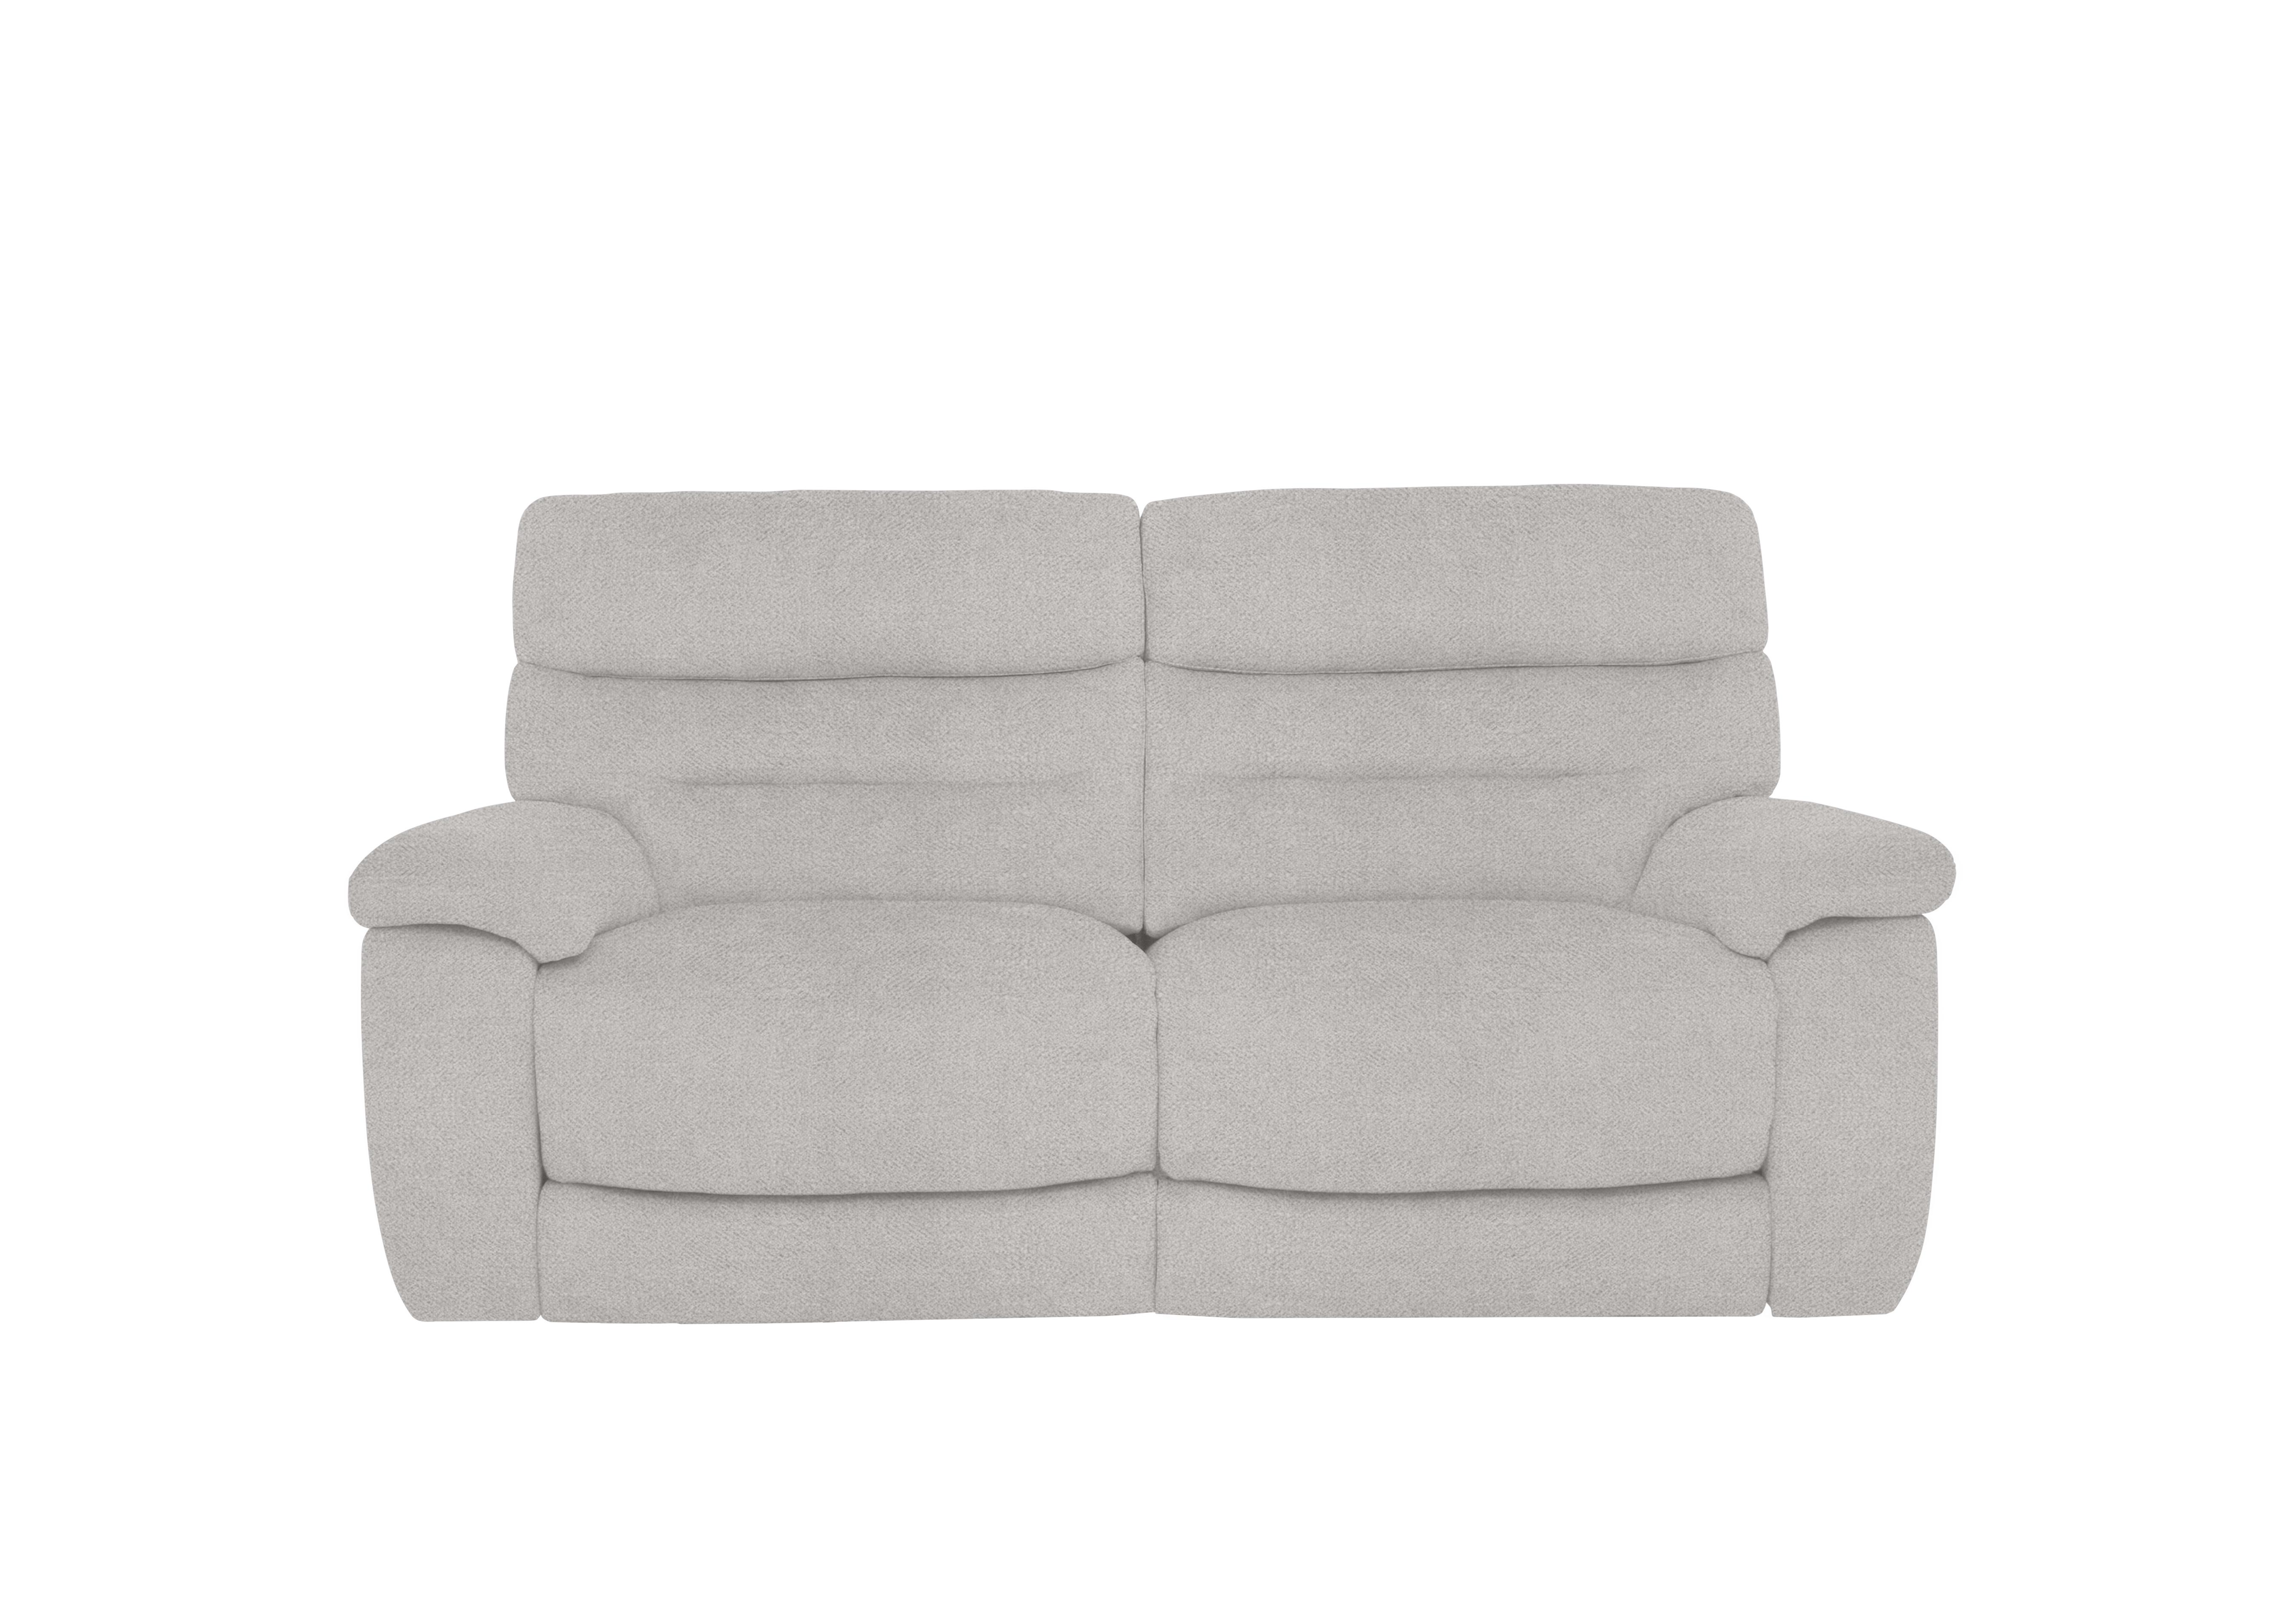 Nimbus 2 Seater Fabric Sofa in Fab-Meo-R23 Silver Grey on Furniture Village